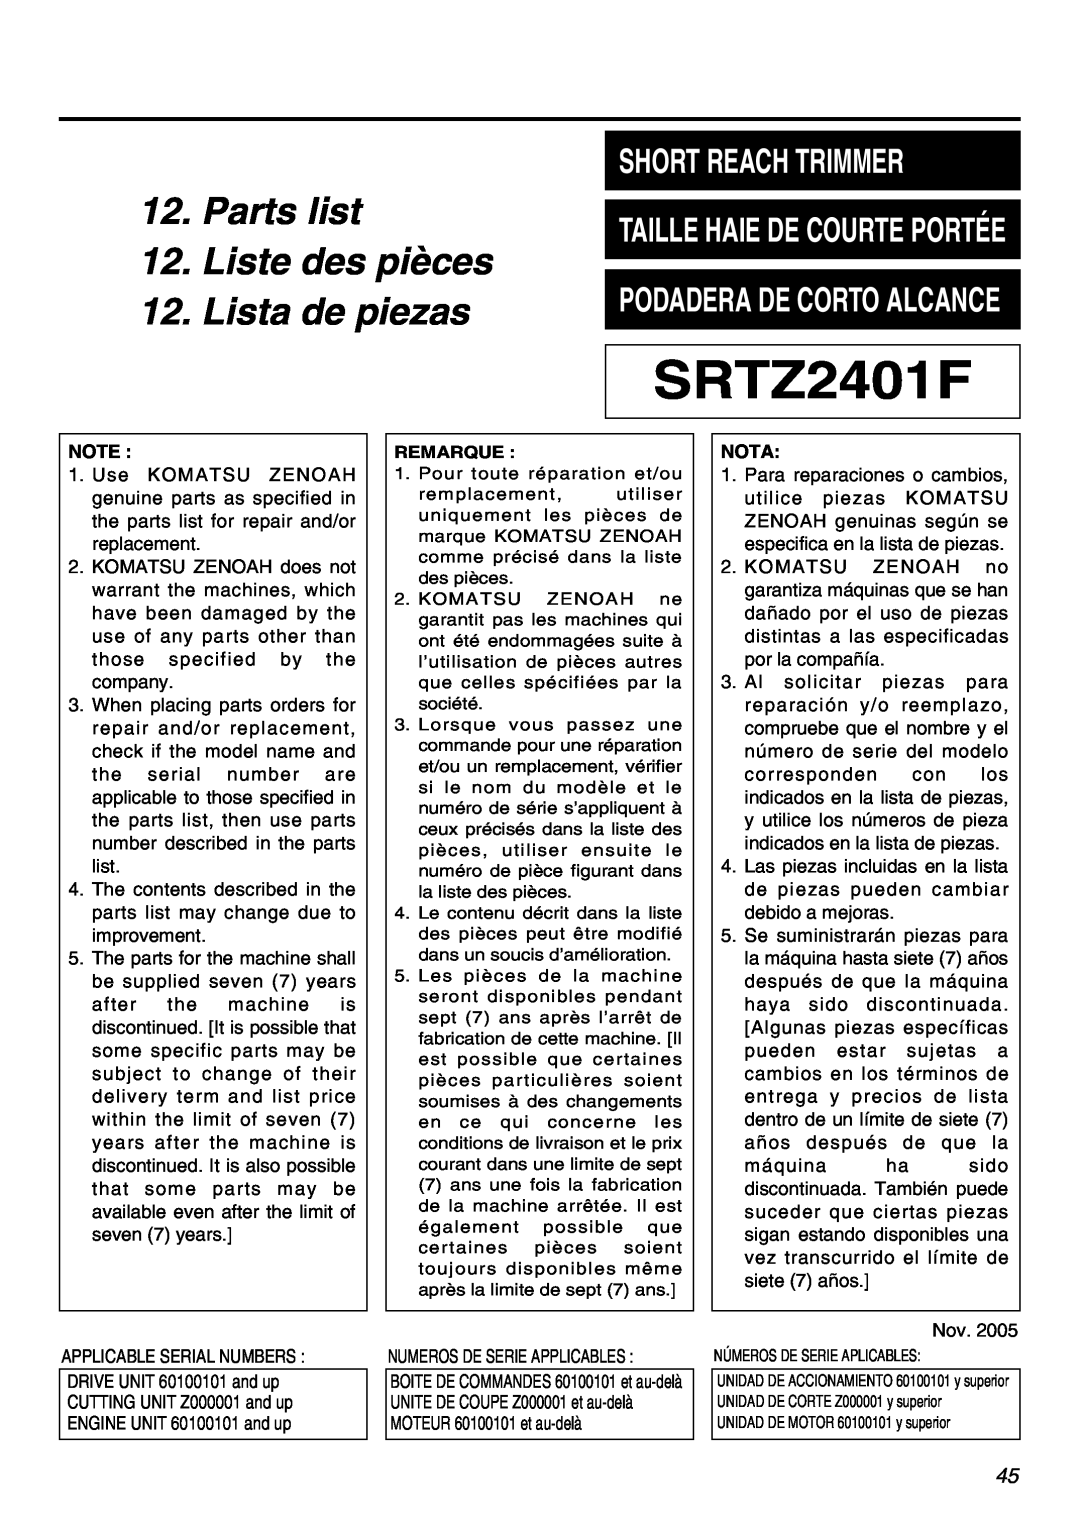 RedMax SRTZ2401F manual Parts list 12. Liste des pièces 12. Lista de piezas, Short Reach Trimmer 